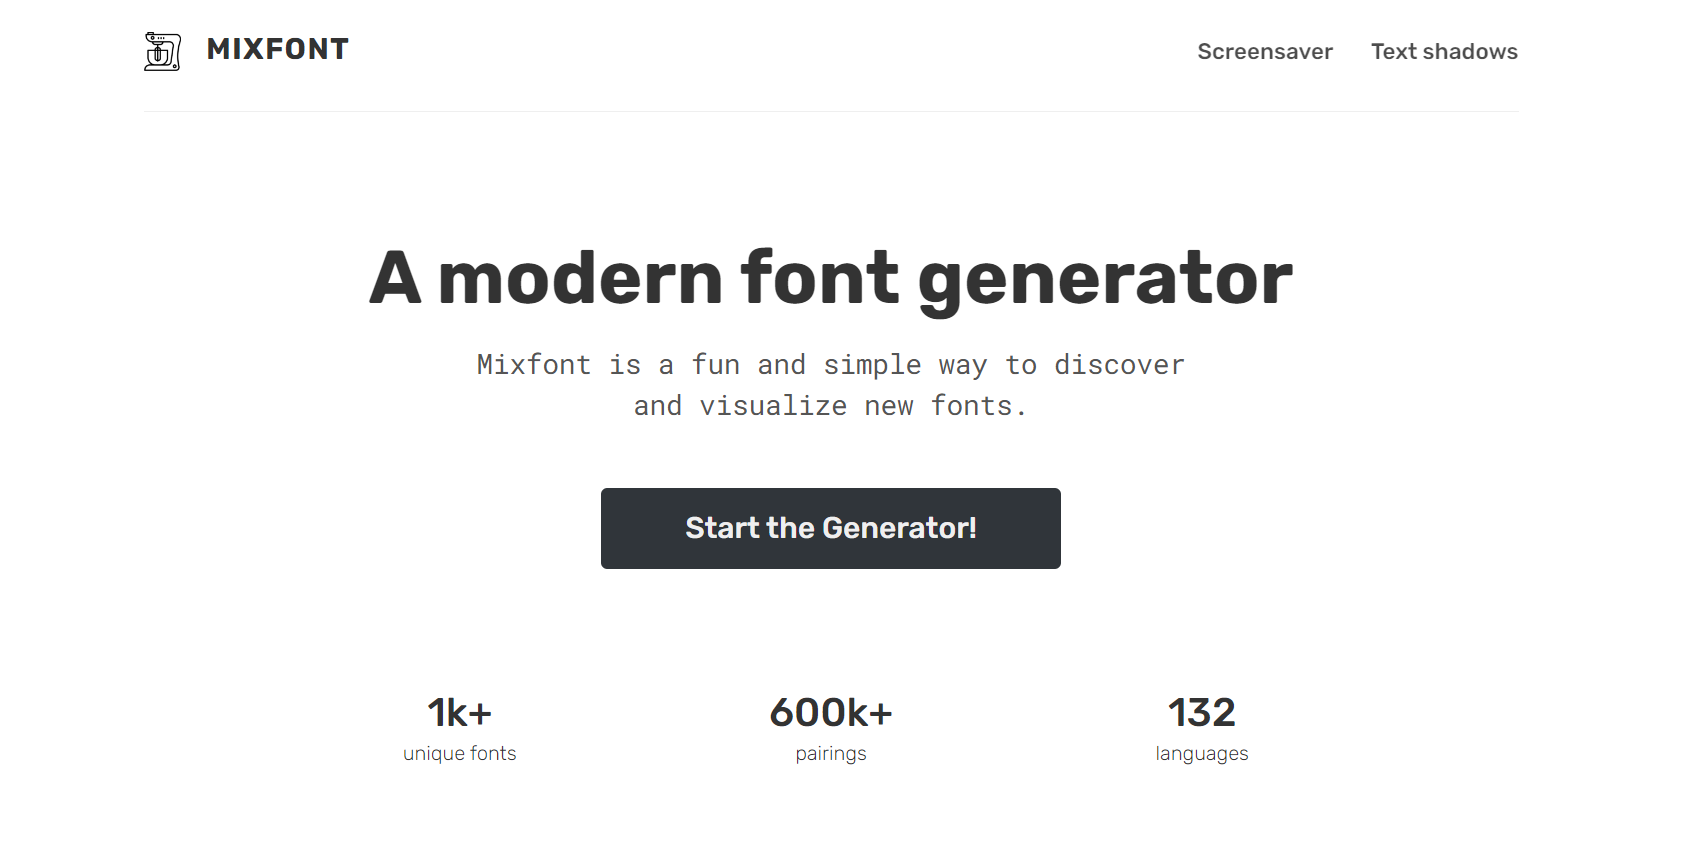 Mixfont font generator tool